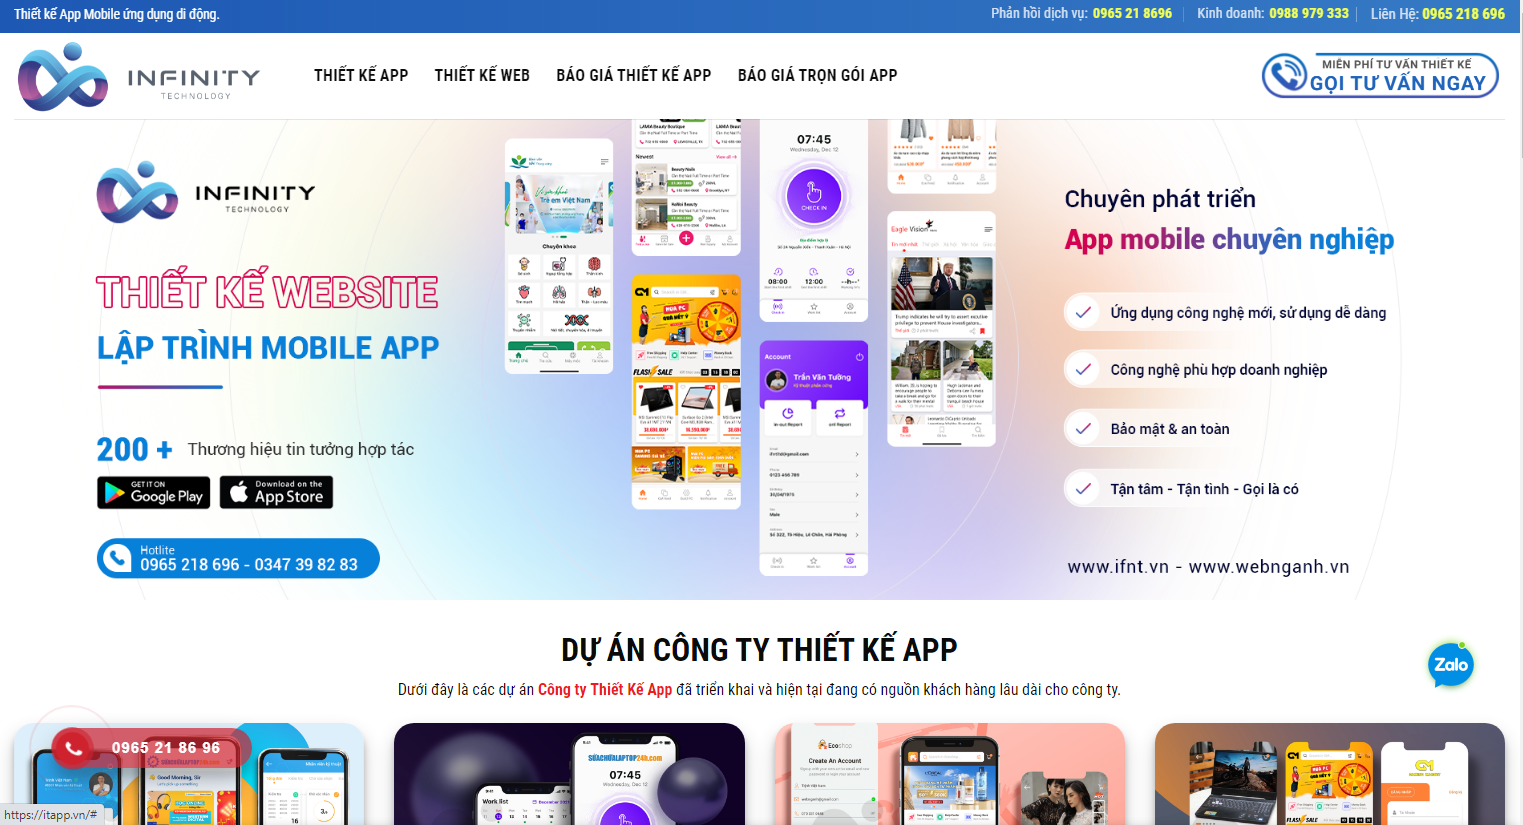 Itapp.vn là đơn vị tiên phong trong lĩnh vực thiết kế App